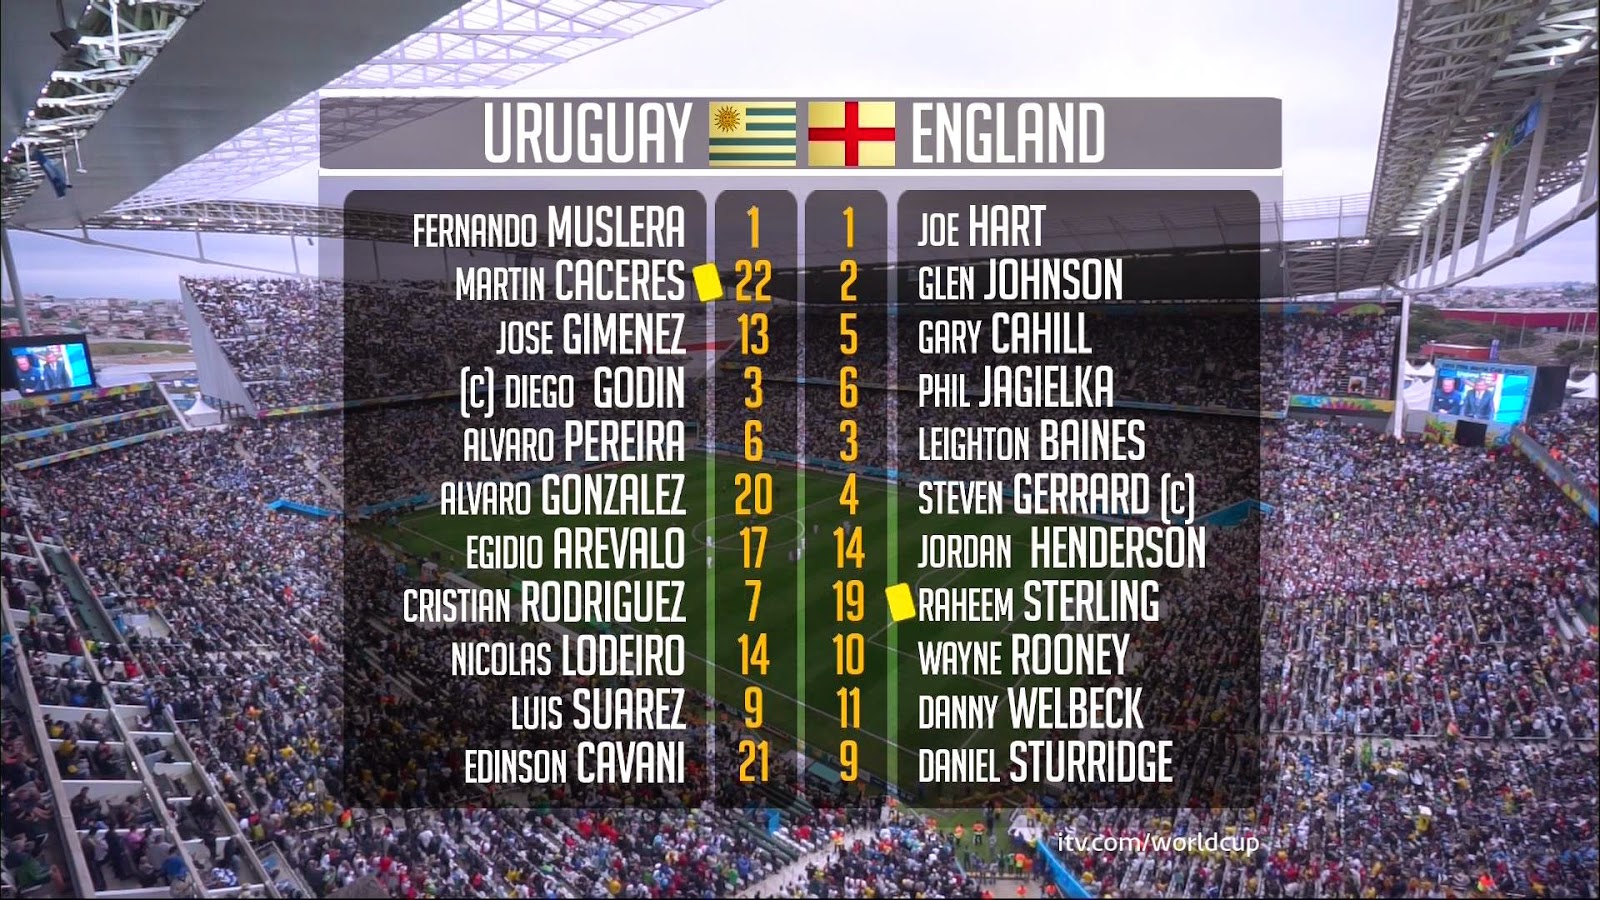 Uruguay-EnglandI.jpg